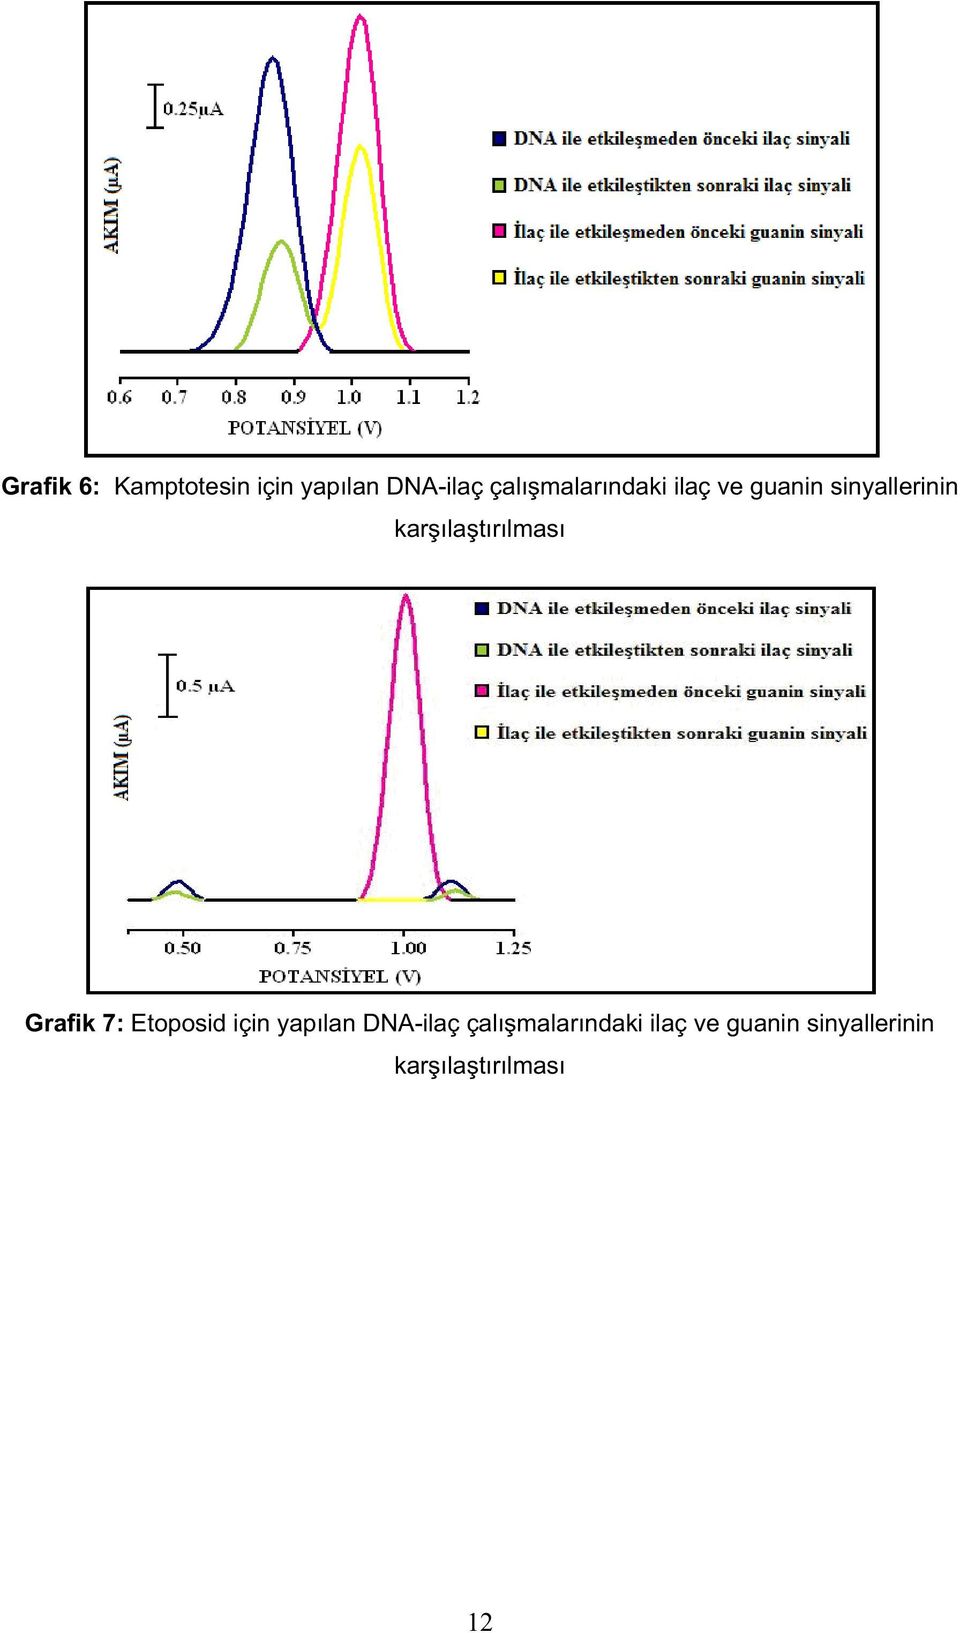 tırılması Grafik 7: Etoposid için yapılan DNA-ilaç